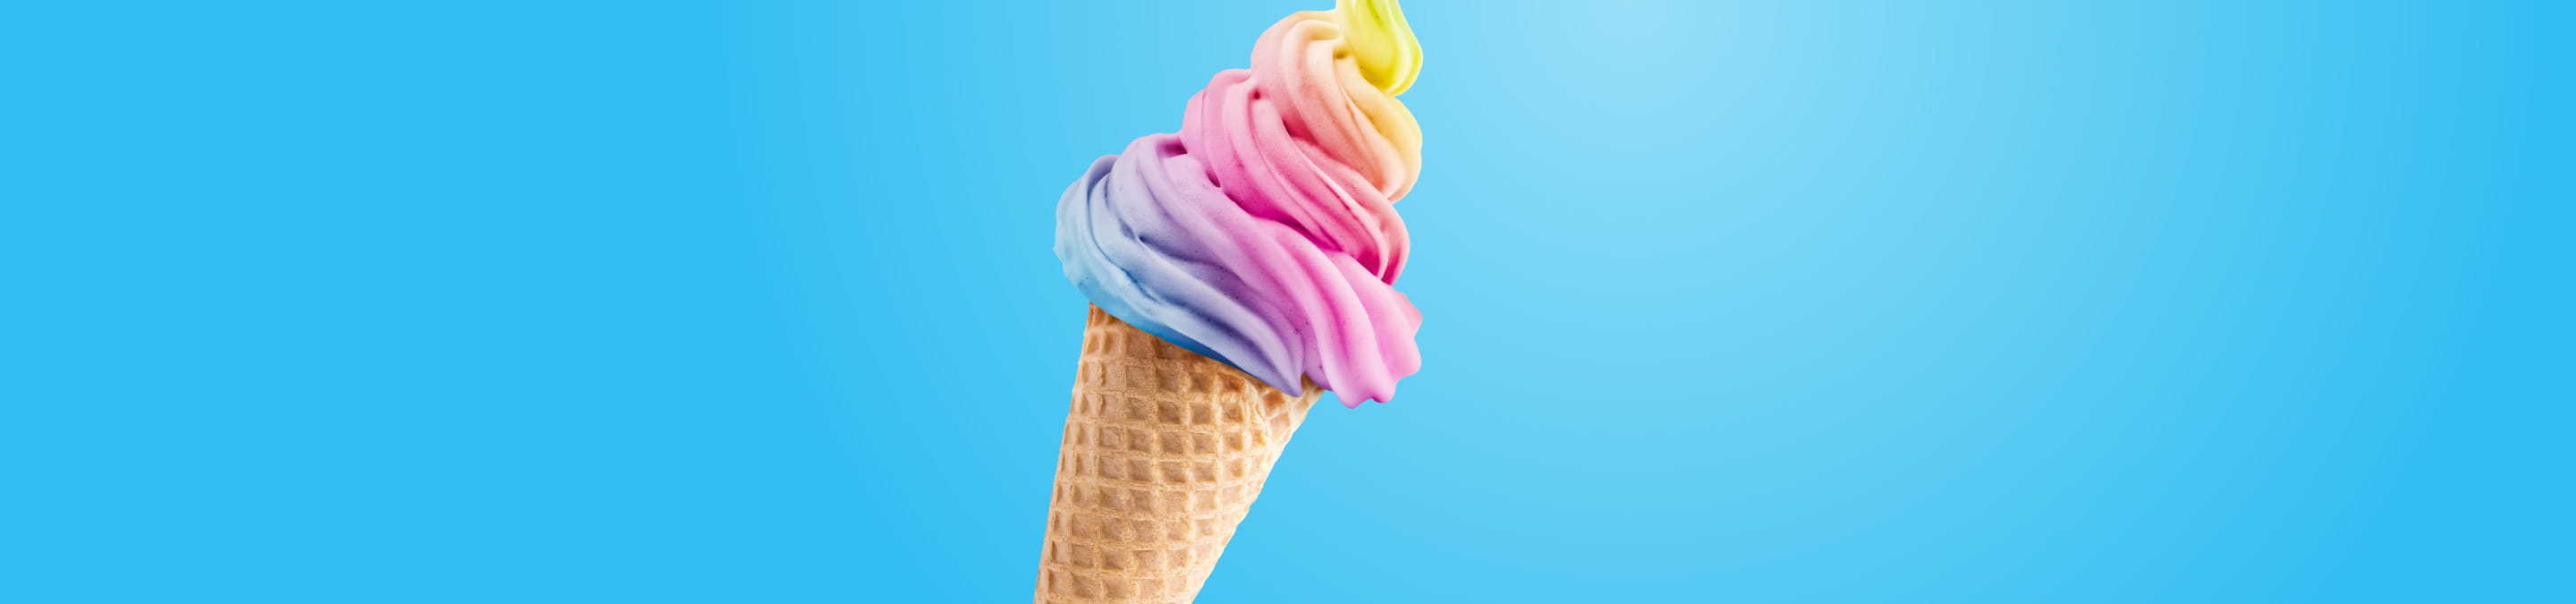 Colourful ice cream cone